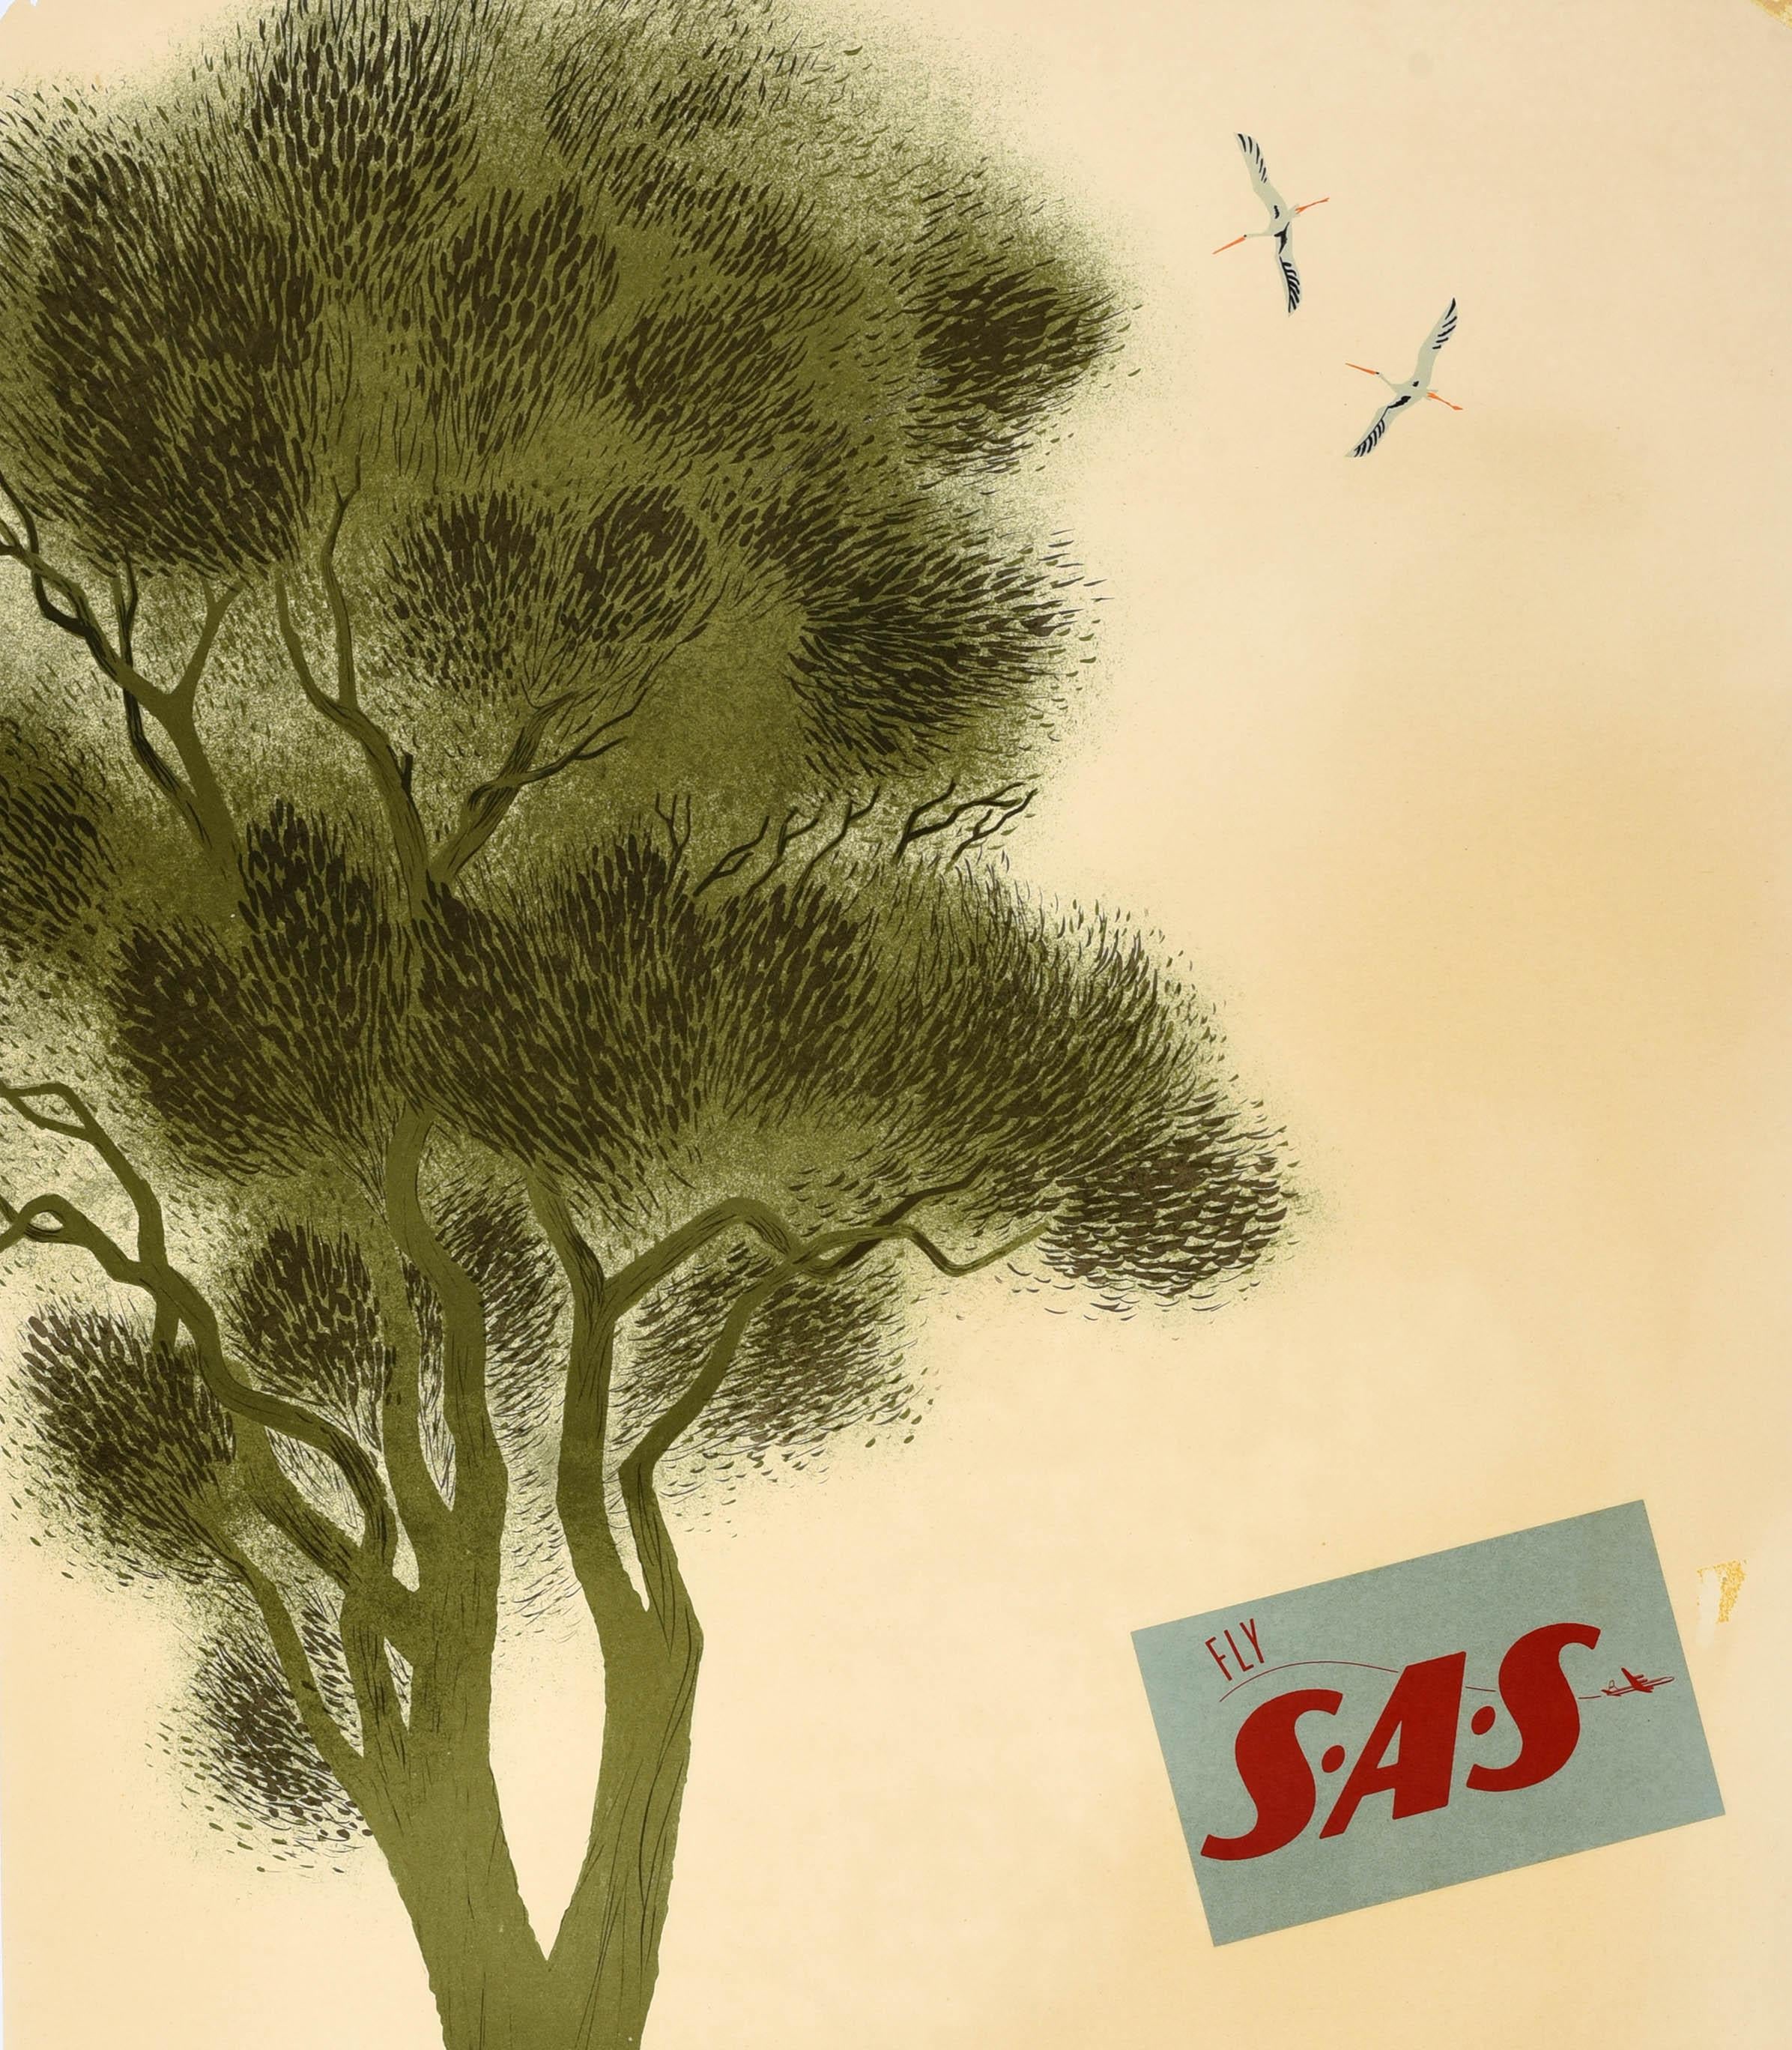 Affiche de voyage originale - Fly SAS Denmark - émise par Scandinavian Airlines System. L'illustration de Viggo Vagnby (1896-1966) représente des oiseaux volant près d'un grand arbre, un homme promenant un cochon devant un village côtier, une